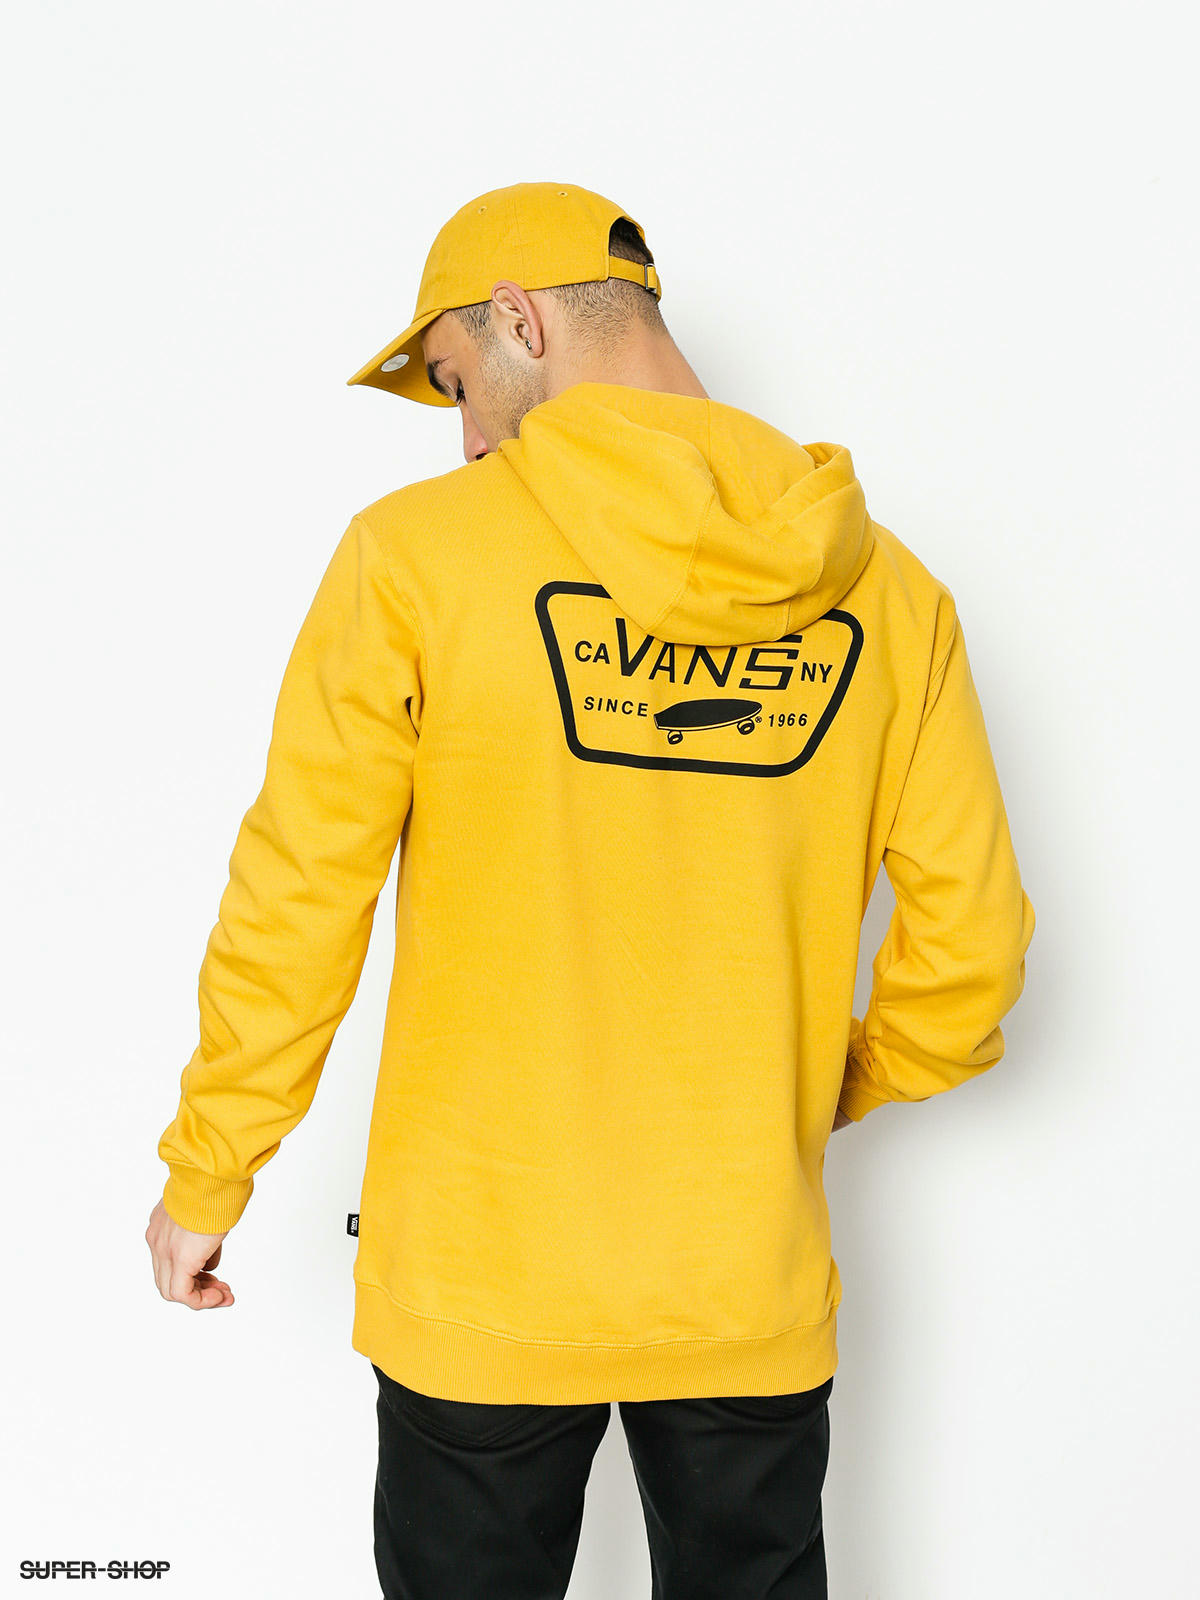 vans sweatshirt yellow